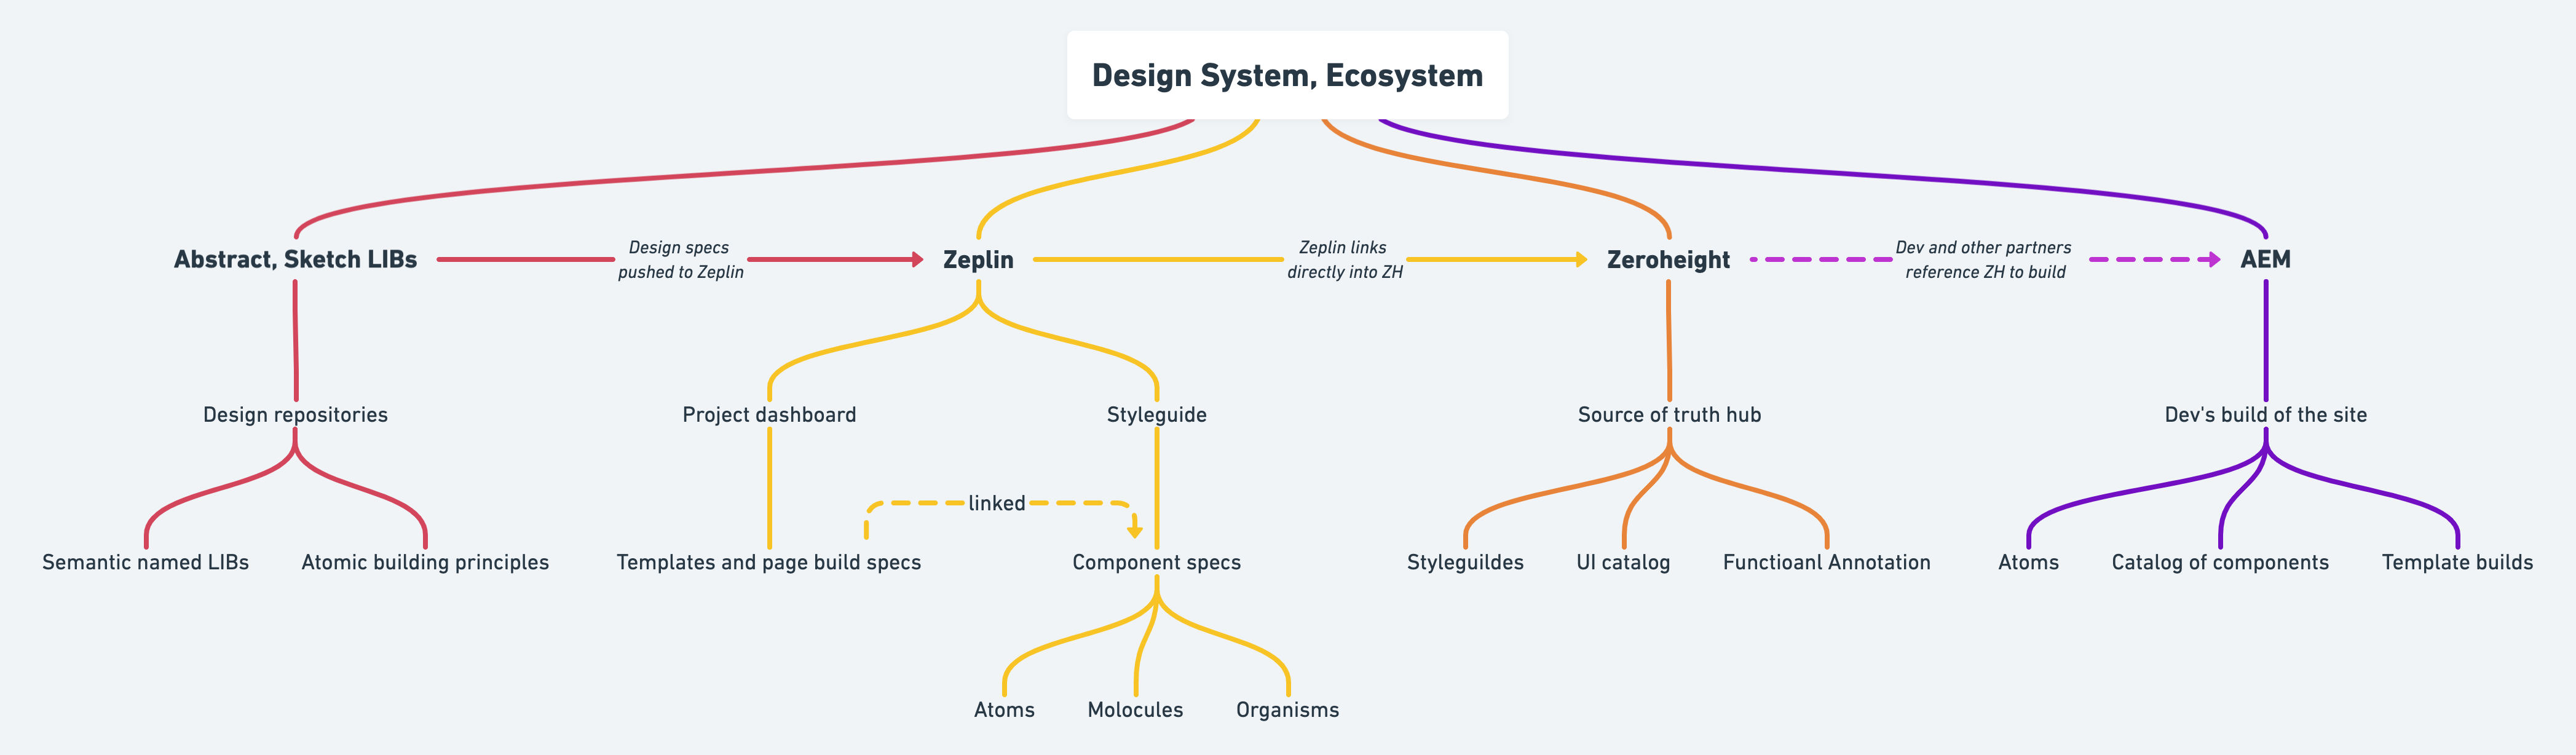 Design system diagram